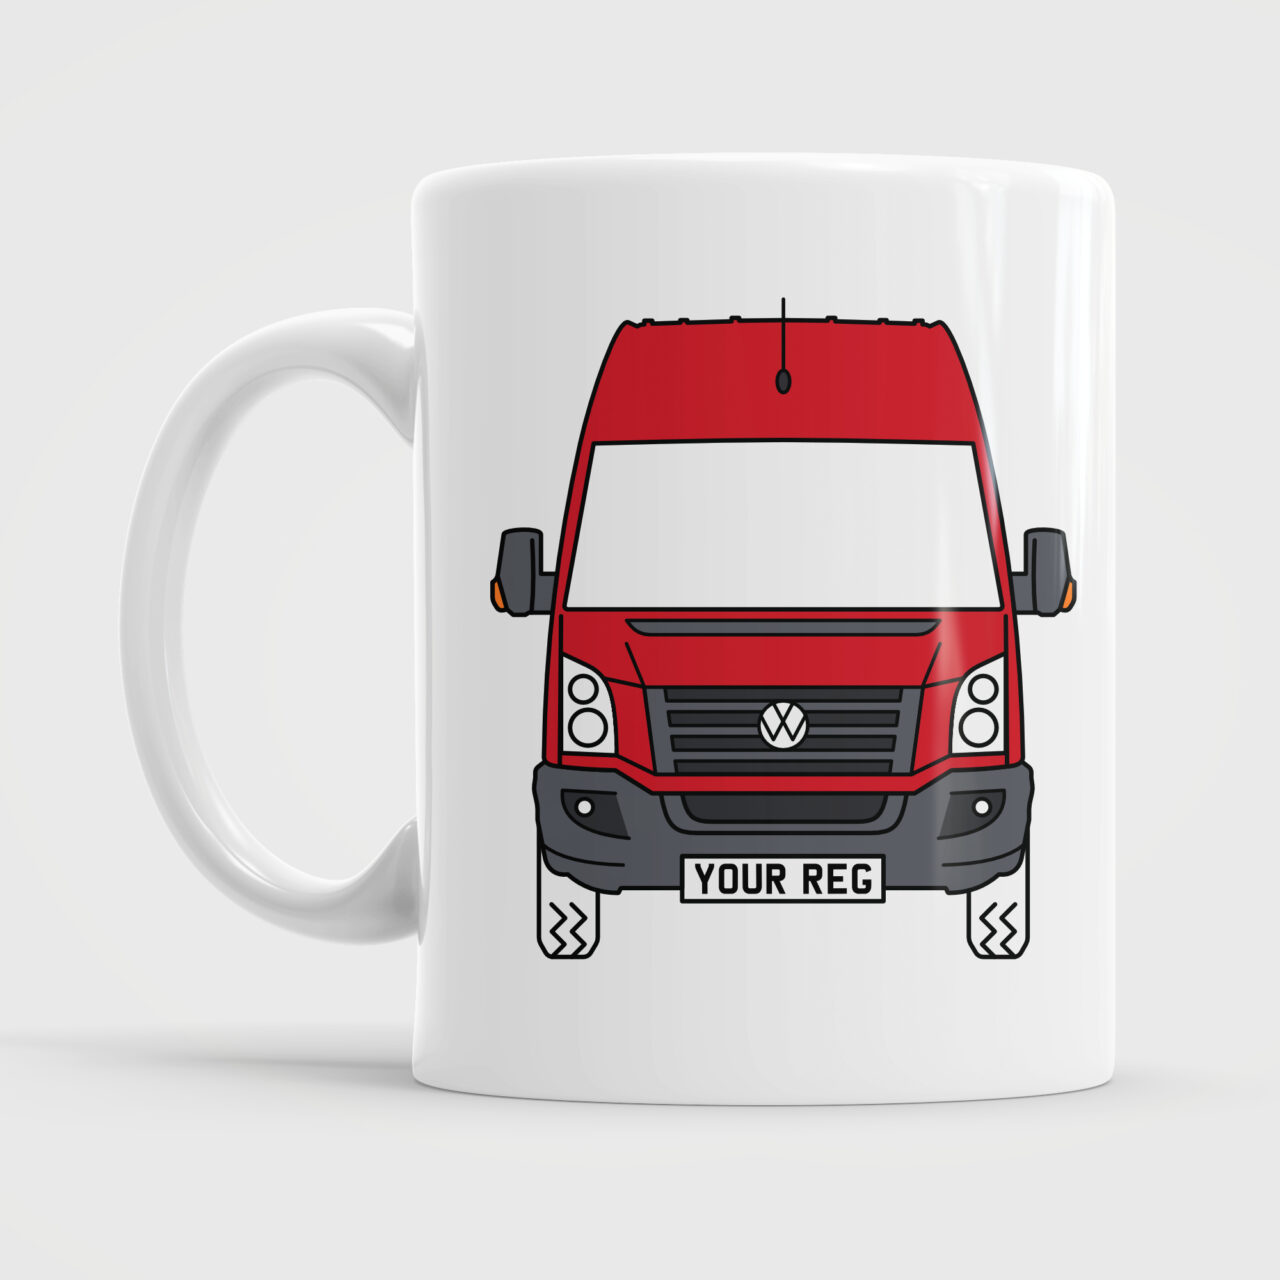 Red VW Volkswagen Crafter Campervan Van Mug Cup Ceramic Gift Present Camper Mugs